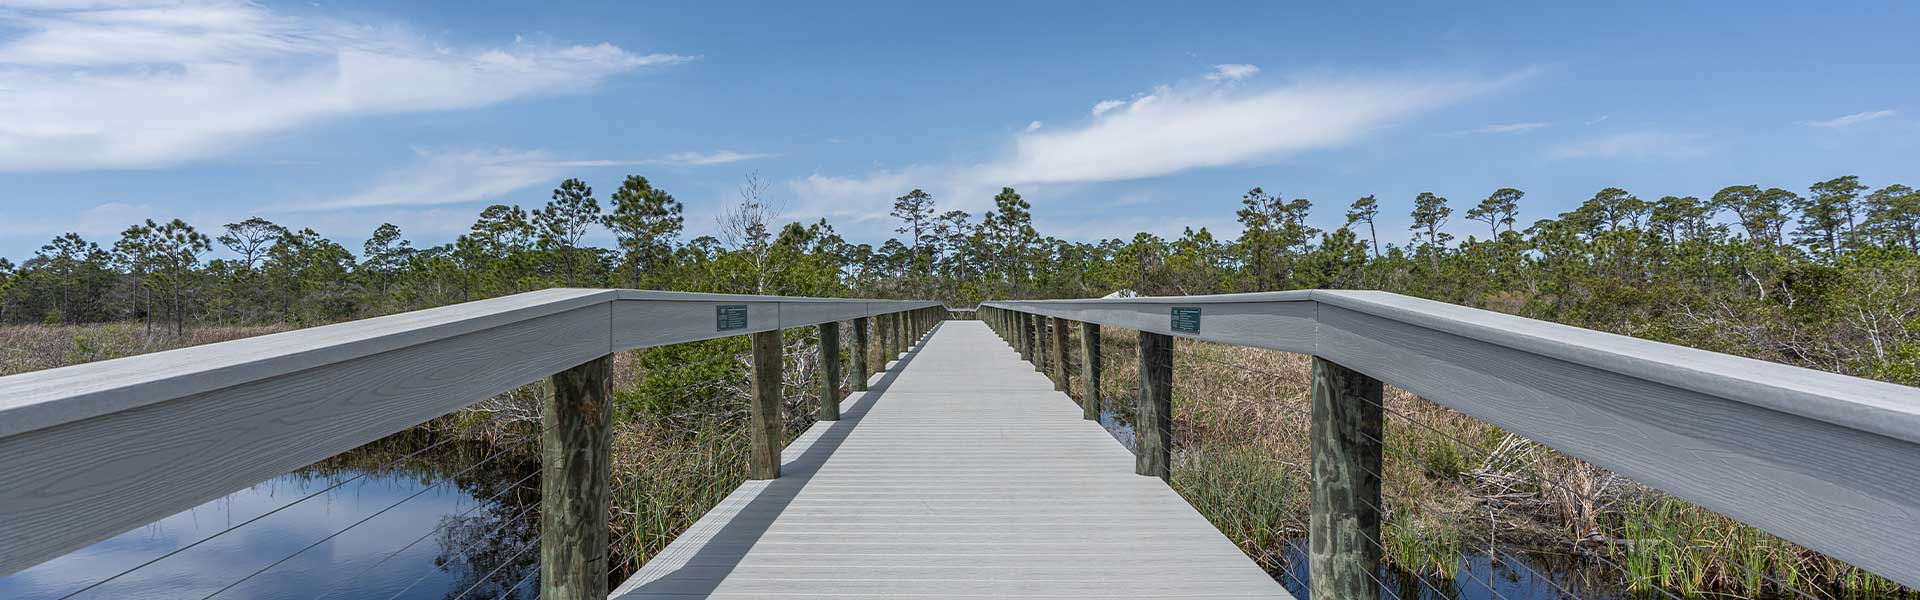 BVR boardwalk to Gulf State park in Gulf Shores, Alabama